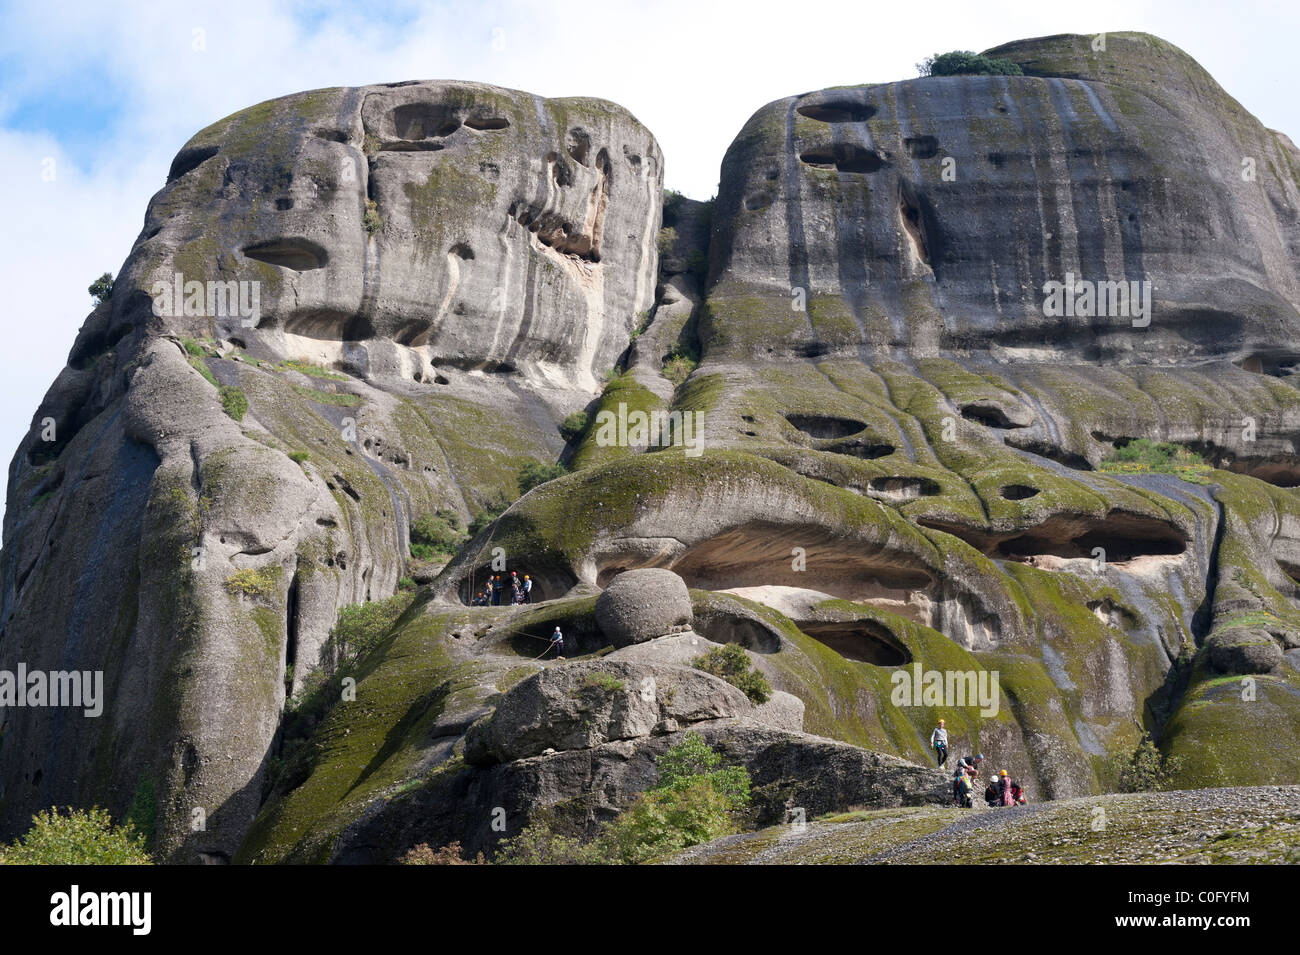 Groupe d'alpinistes sur une formation rocheuse spectaculaire dans la région des météores, Grèce. Banque D'Images